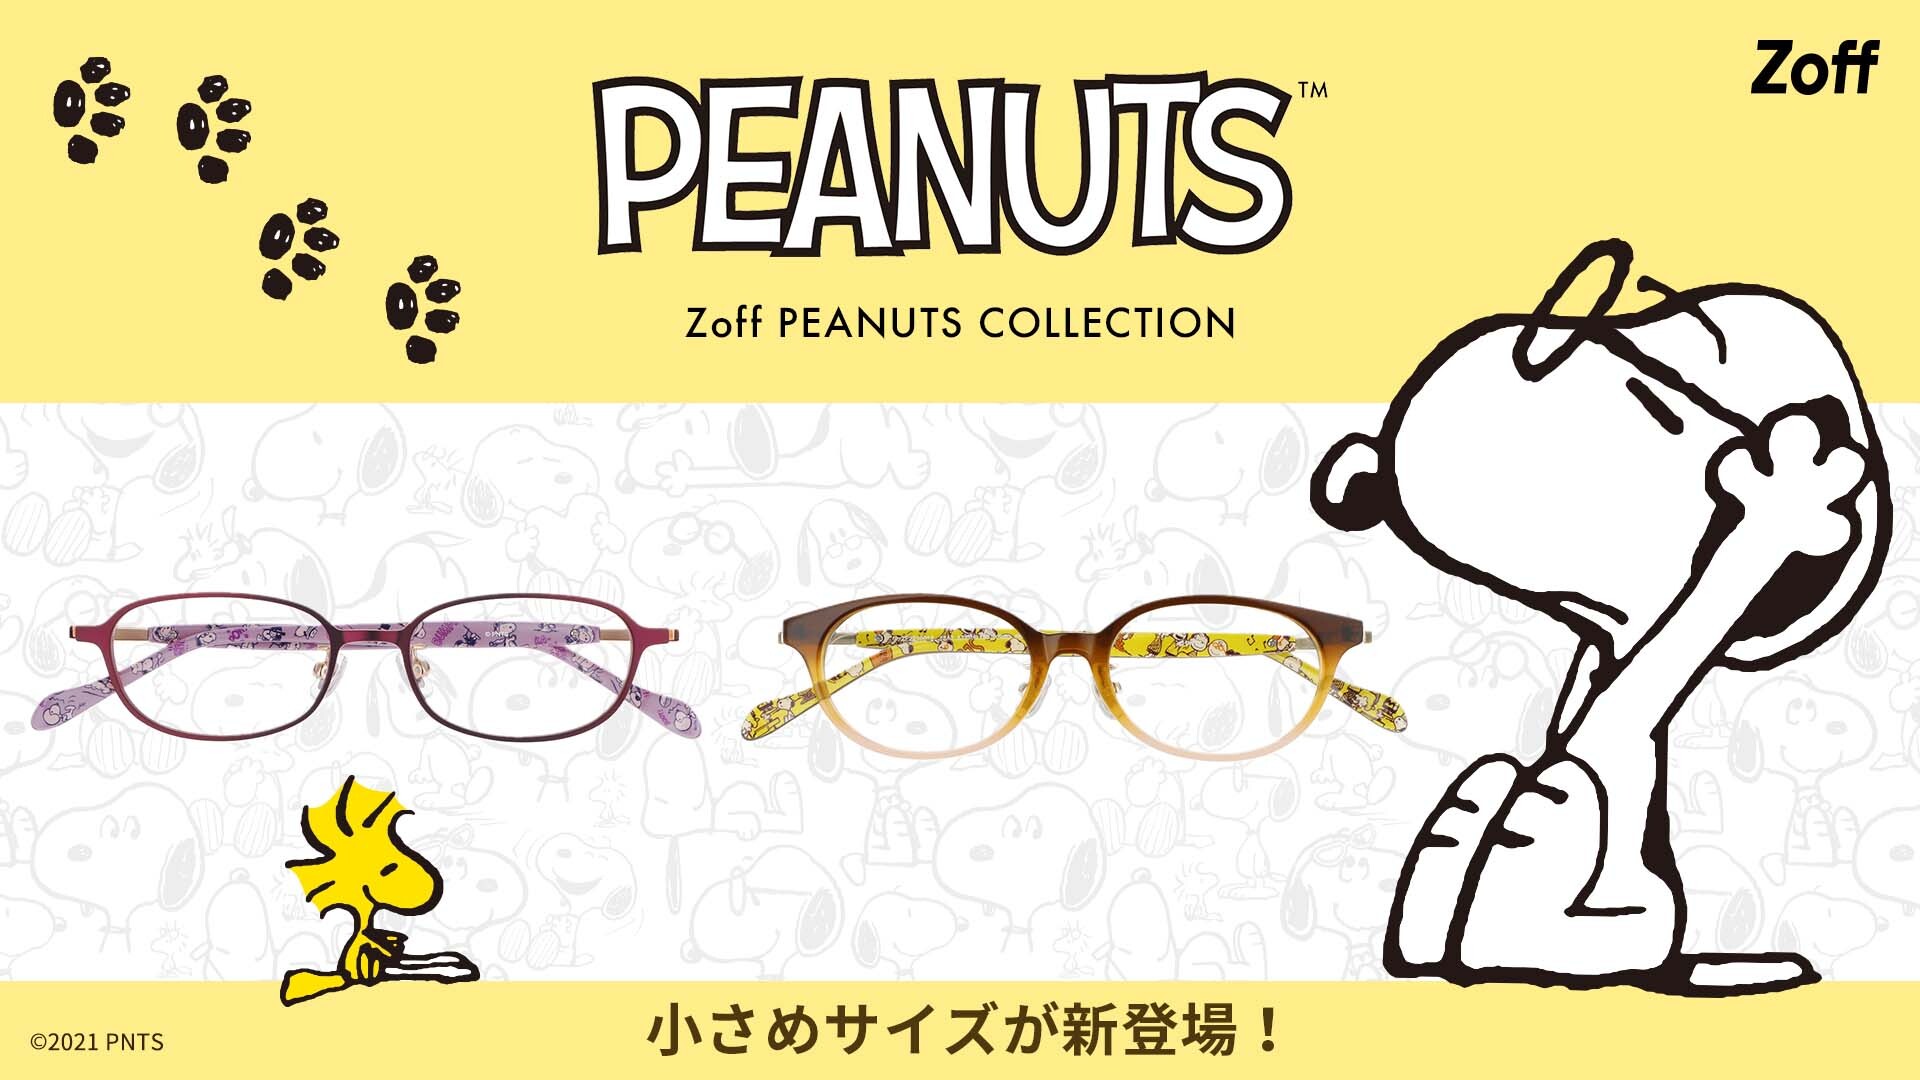 大人気の『Zoff PEANUTS COLLECTION』にKIDSモデルが新登場。Zoffオリジナルのメガネを掛けたスヌーピーにも注目！